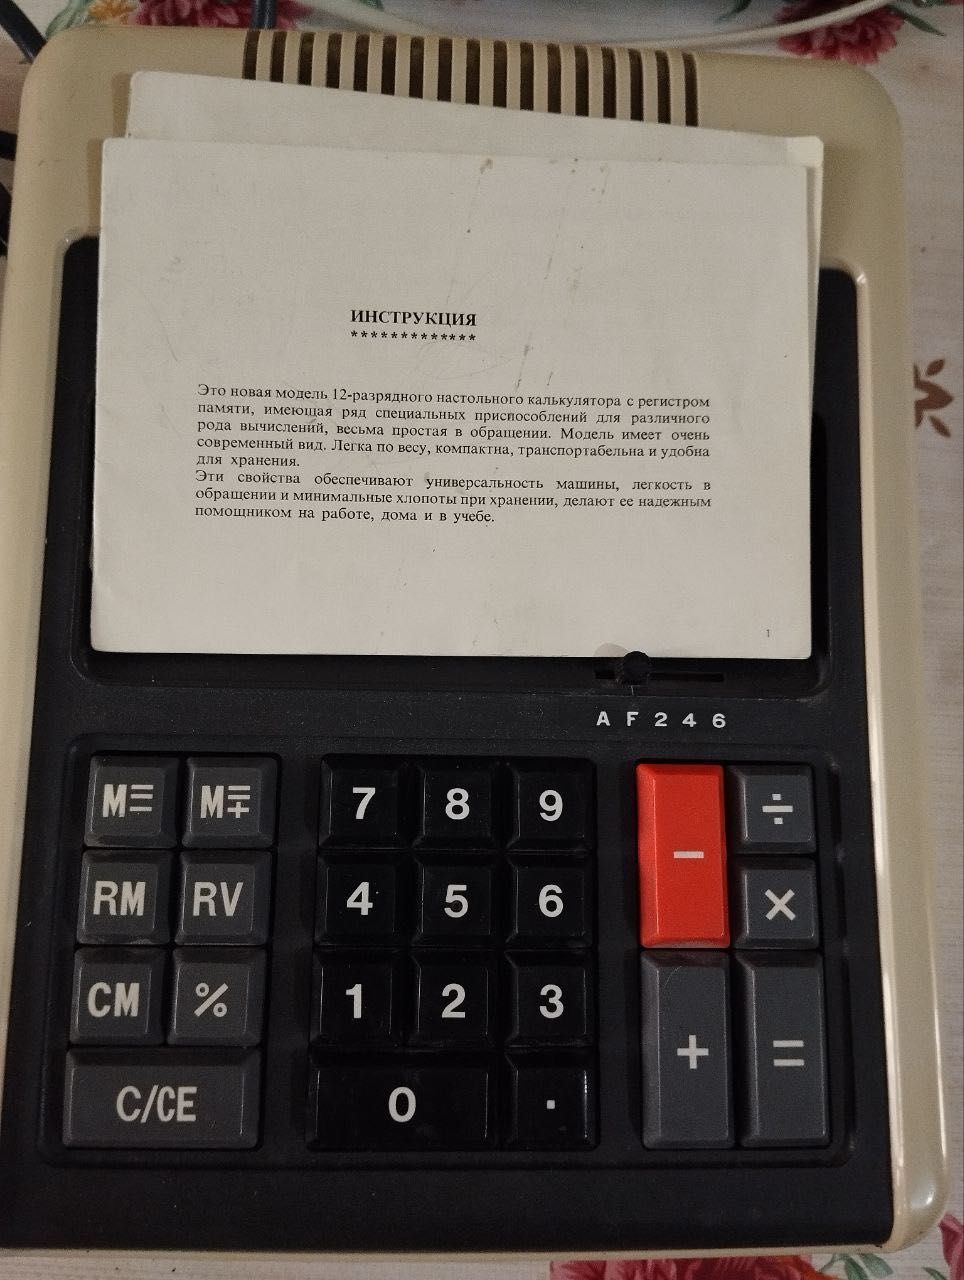 Японский калькулятор времен СССР